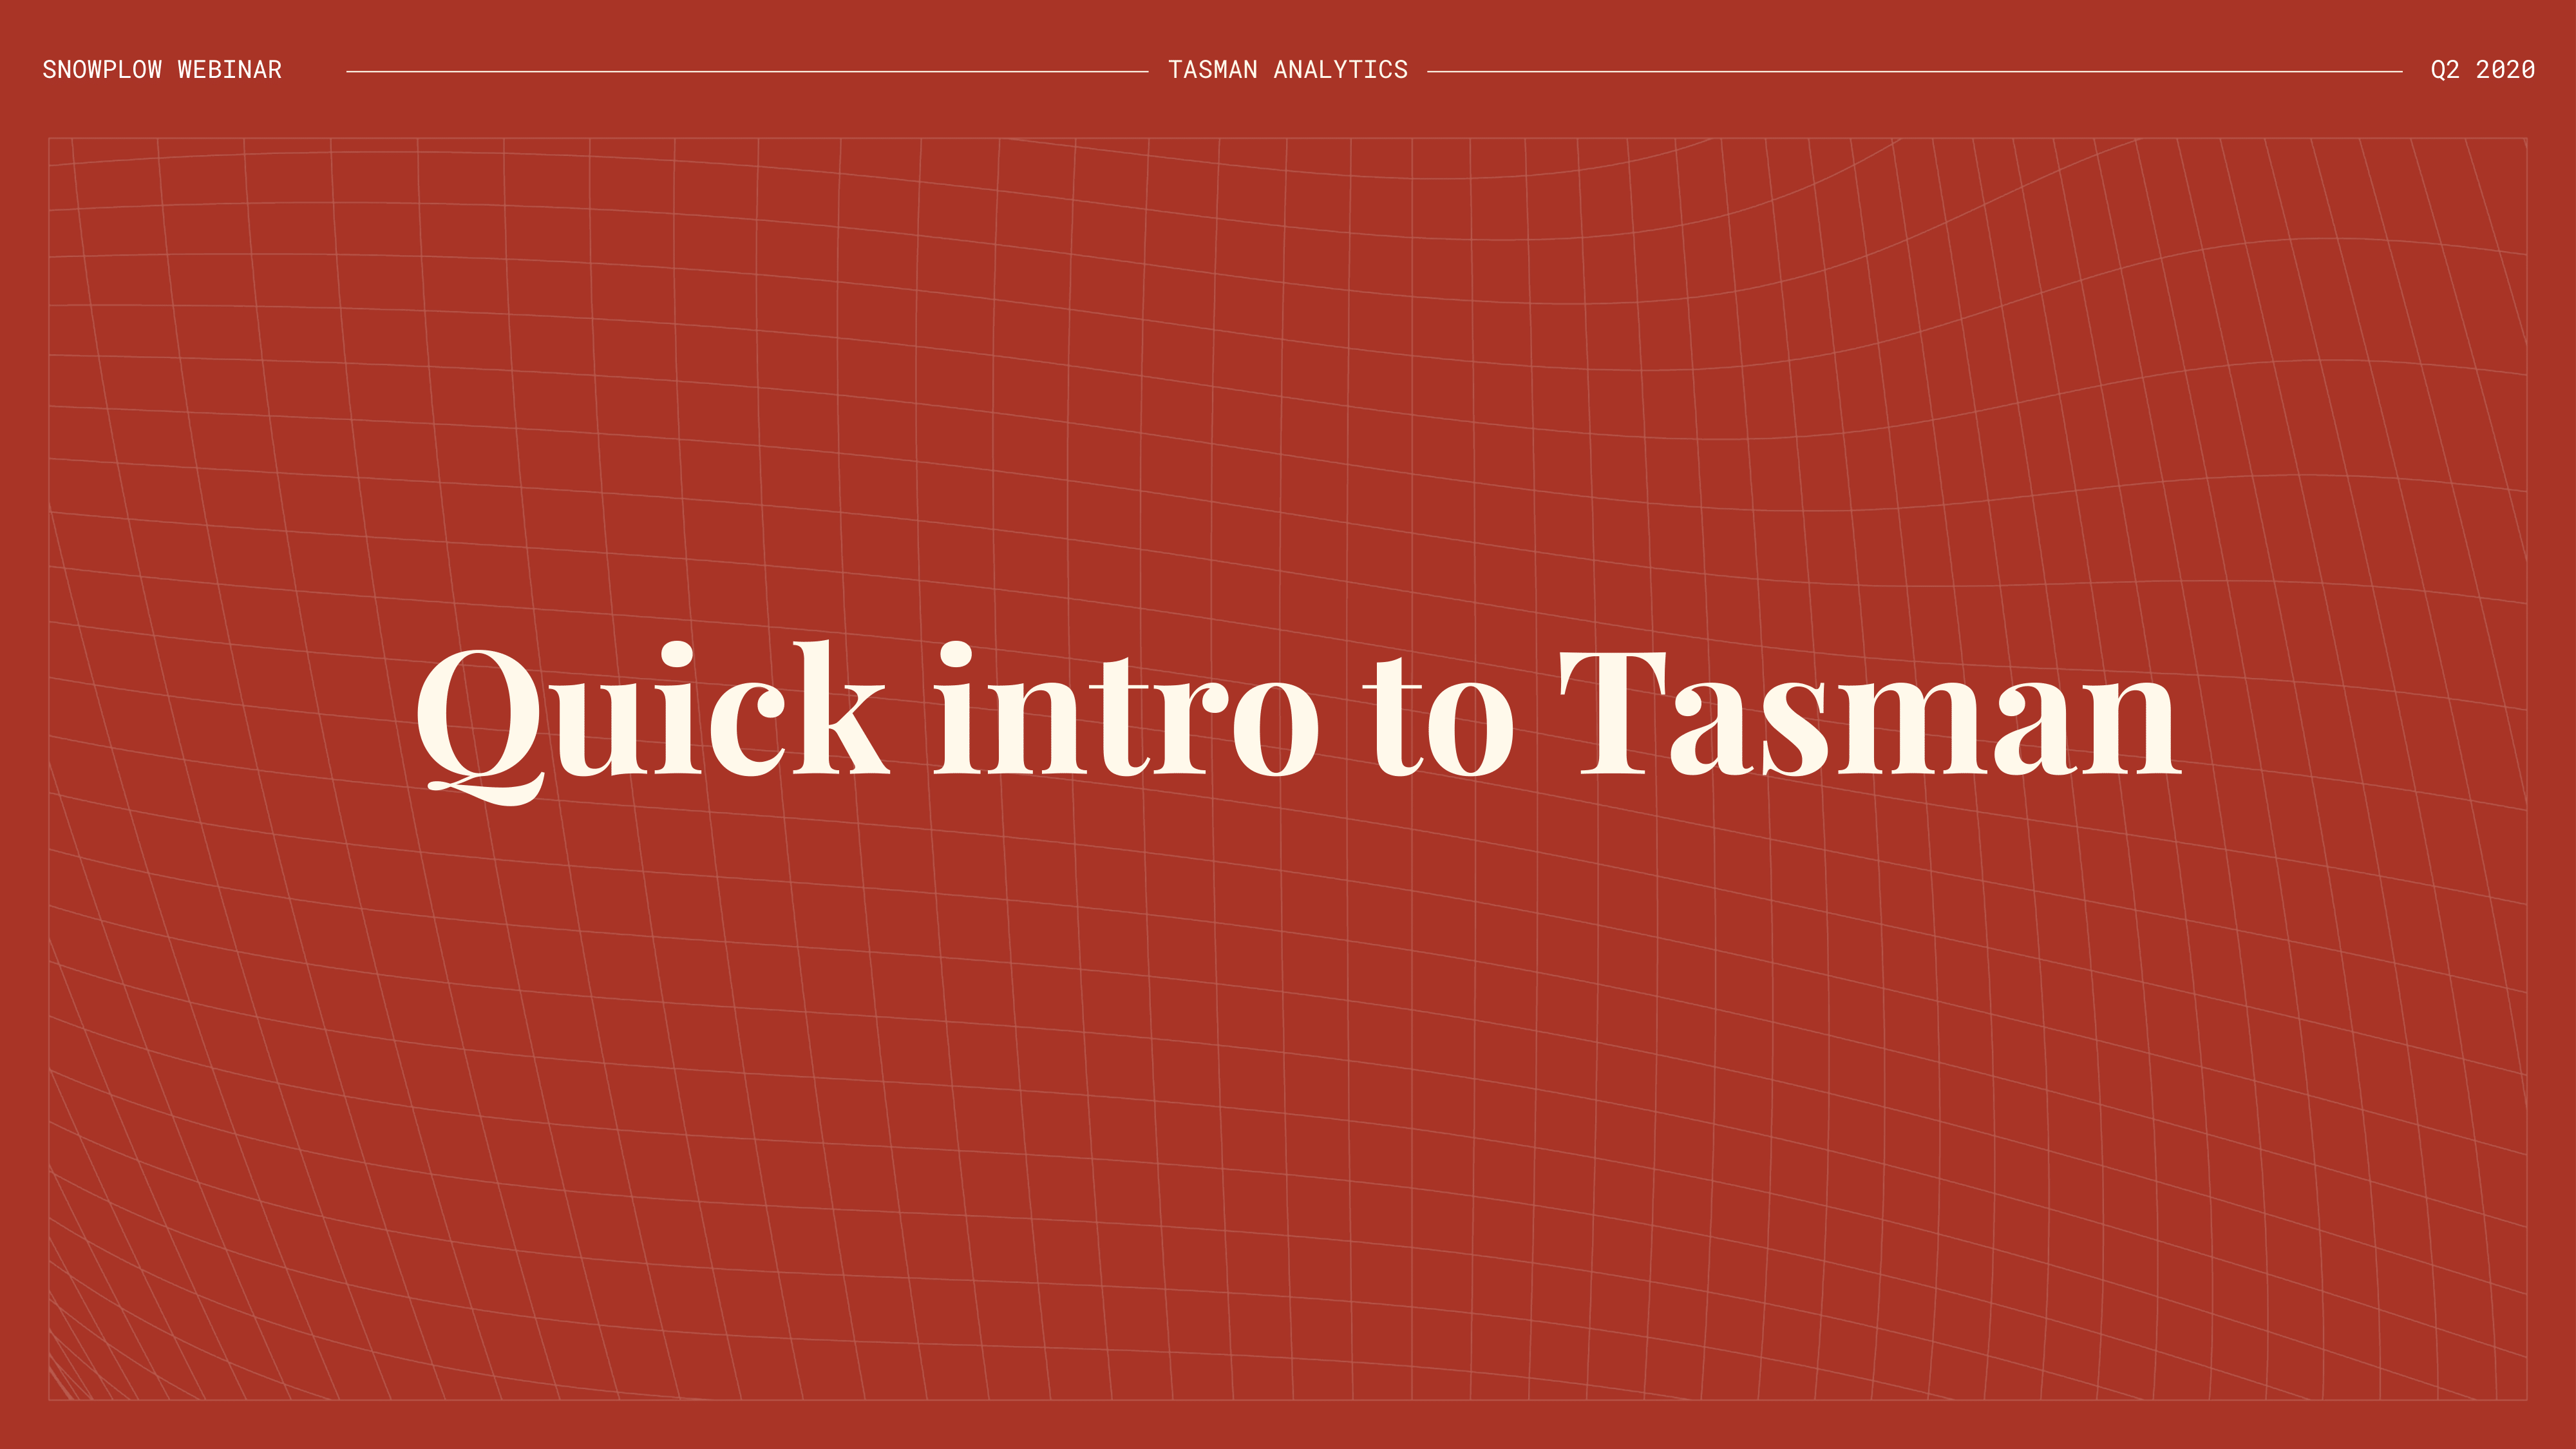 20200429 Snowplow + Tasman webinar-02